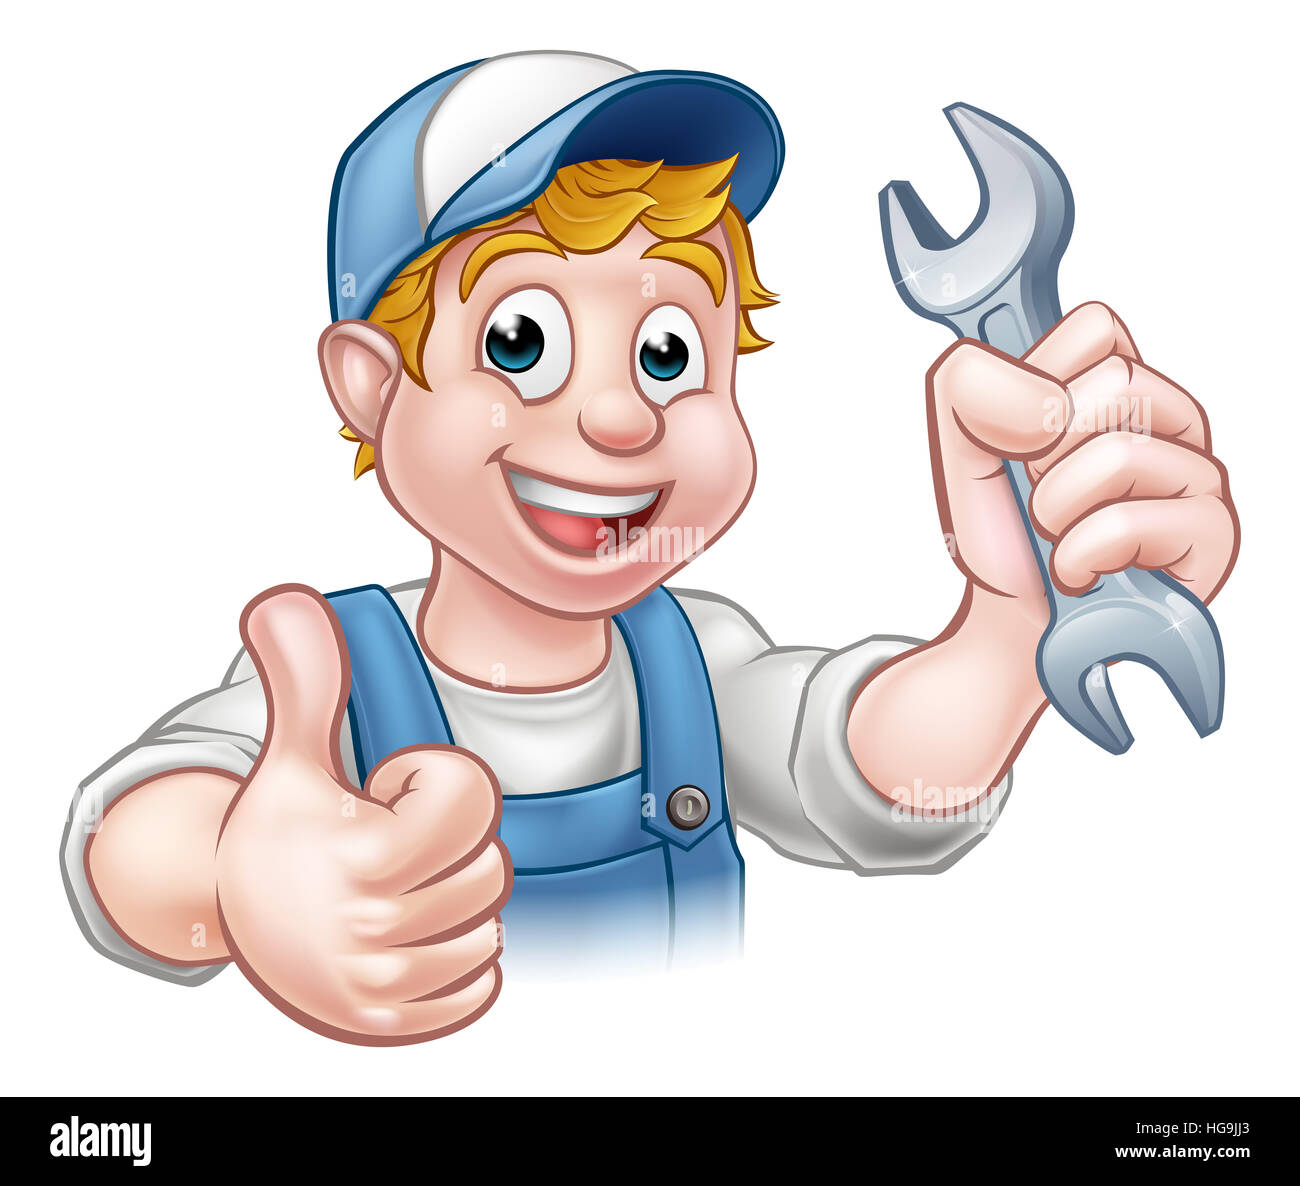 Ein Mechaniker oder Klempner Handwerker Cartoon-Figur hält einen Schraubenschlüssel und geben einen Daumen nach oben Stockfoto